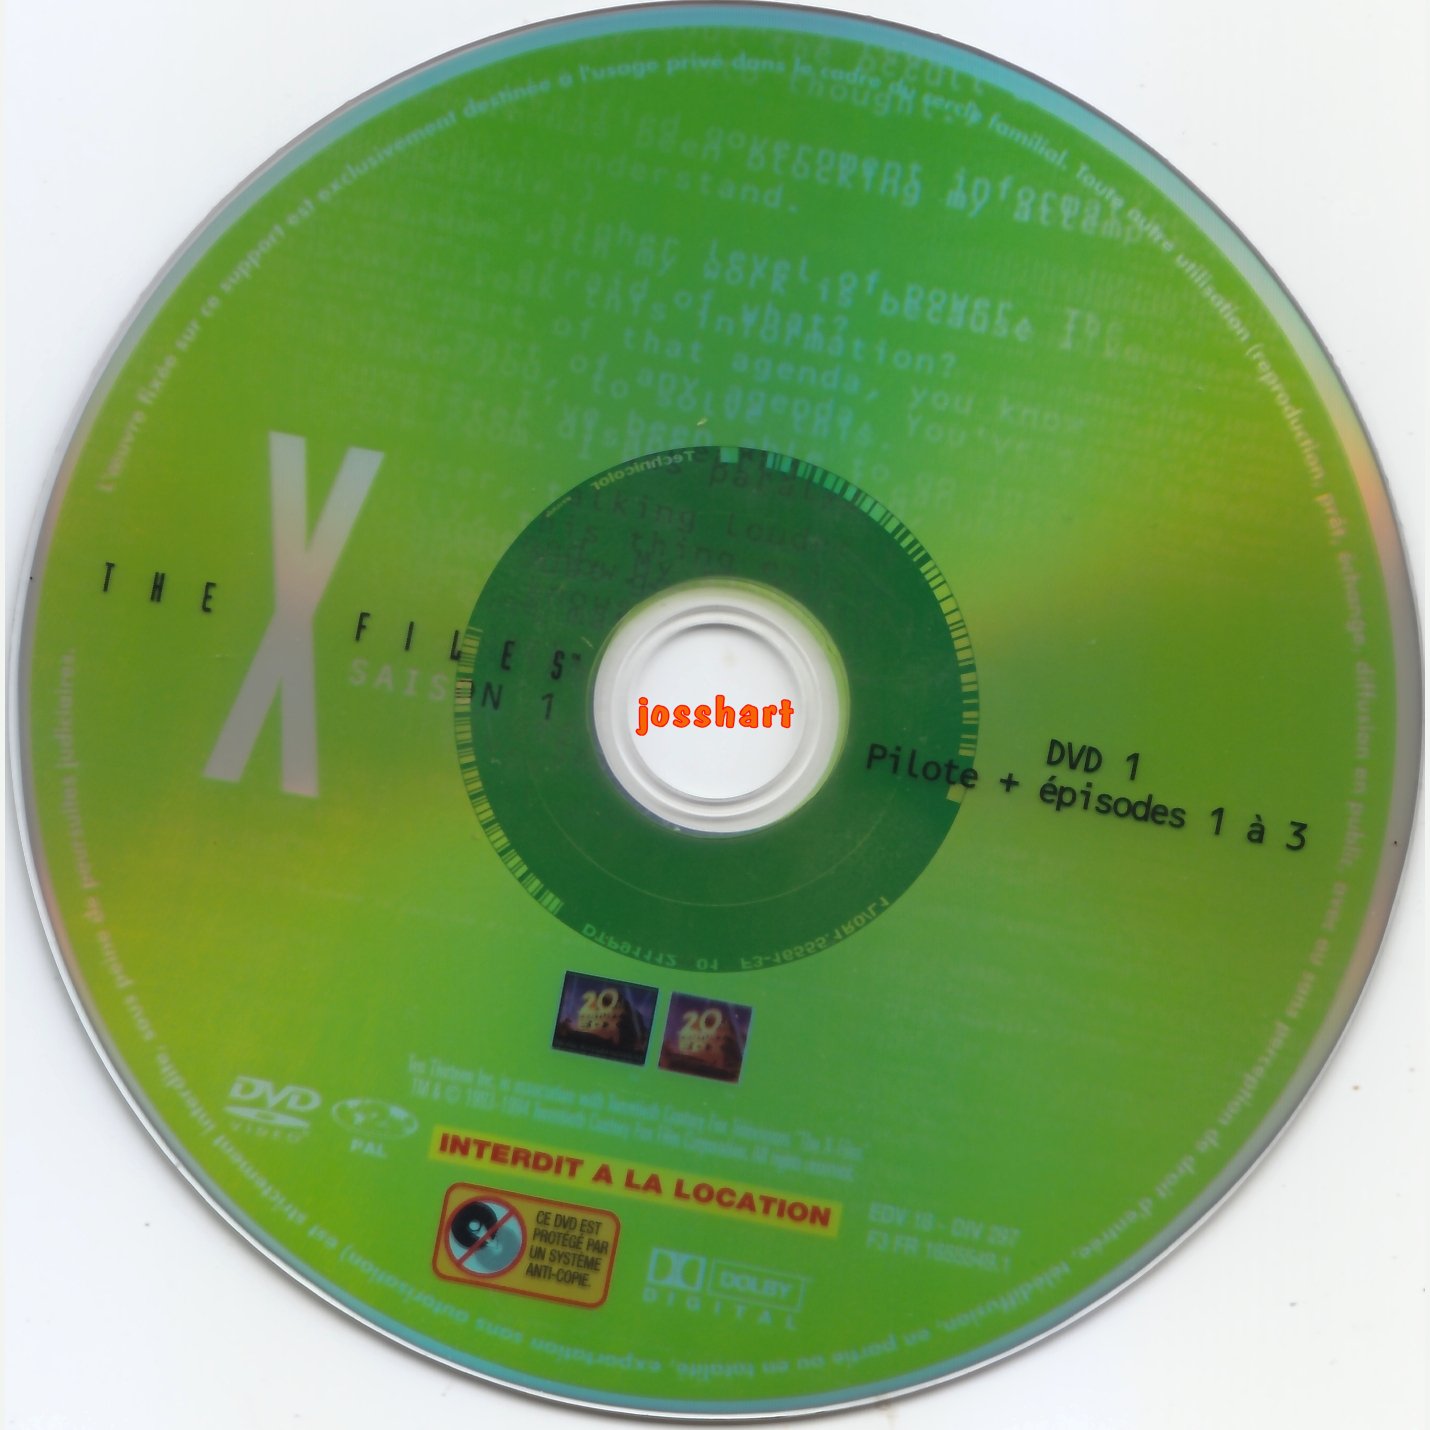 The X Files Saison 1 DVD 1 v2